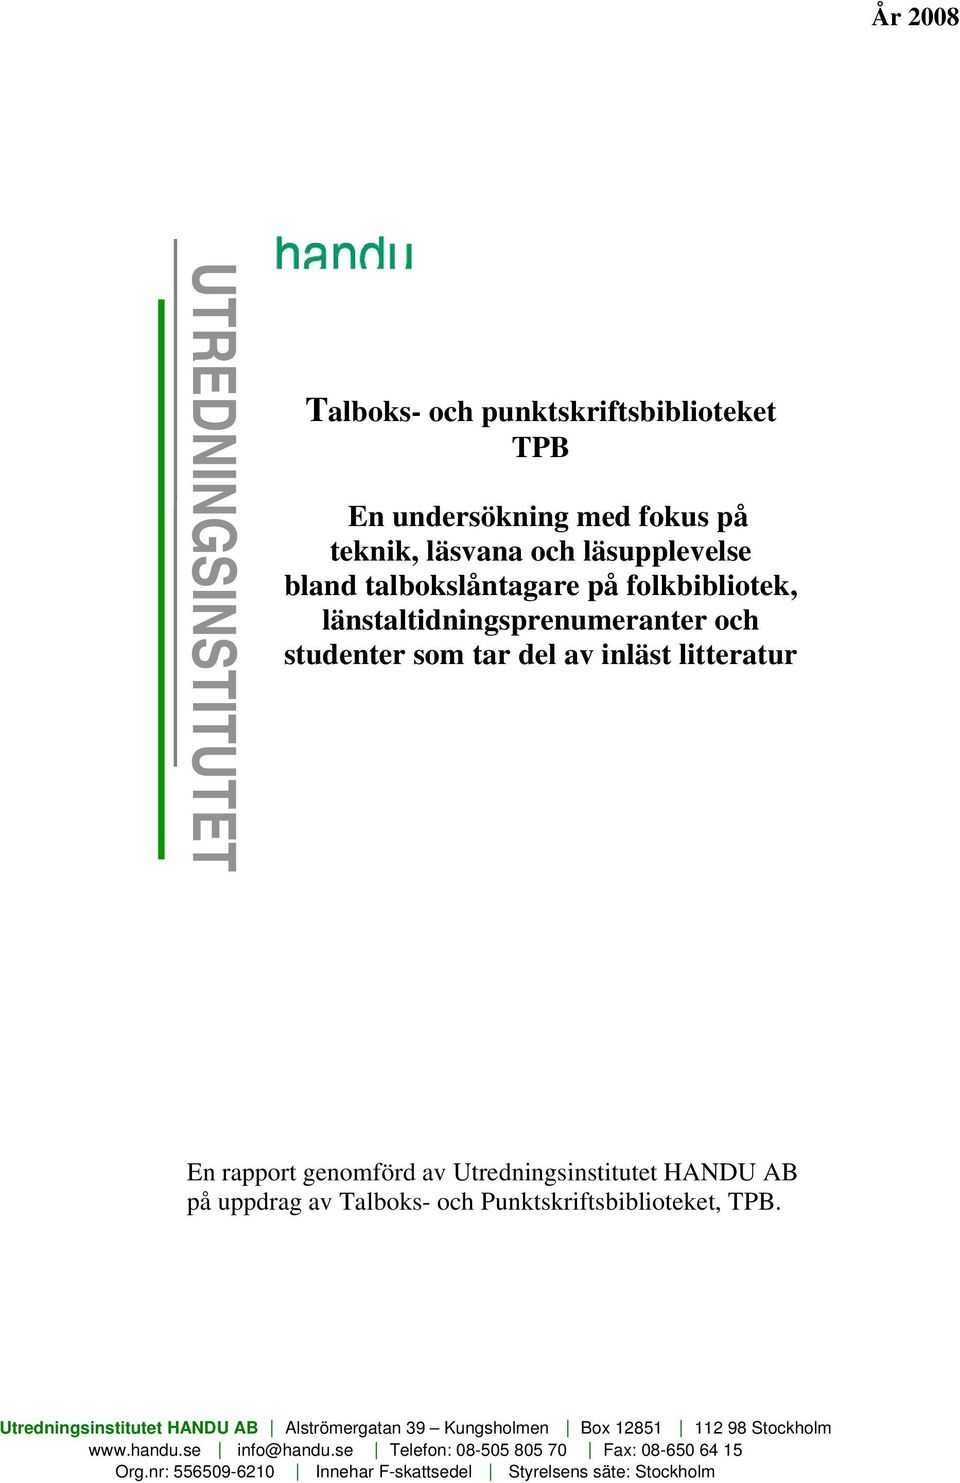 Utredningsinstitutet HANDU AB på uppdrag av Talboks- och Punktskriftsbiblioteket, TPB.